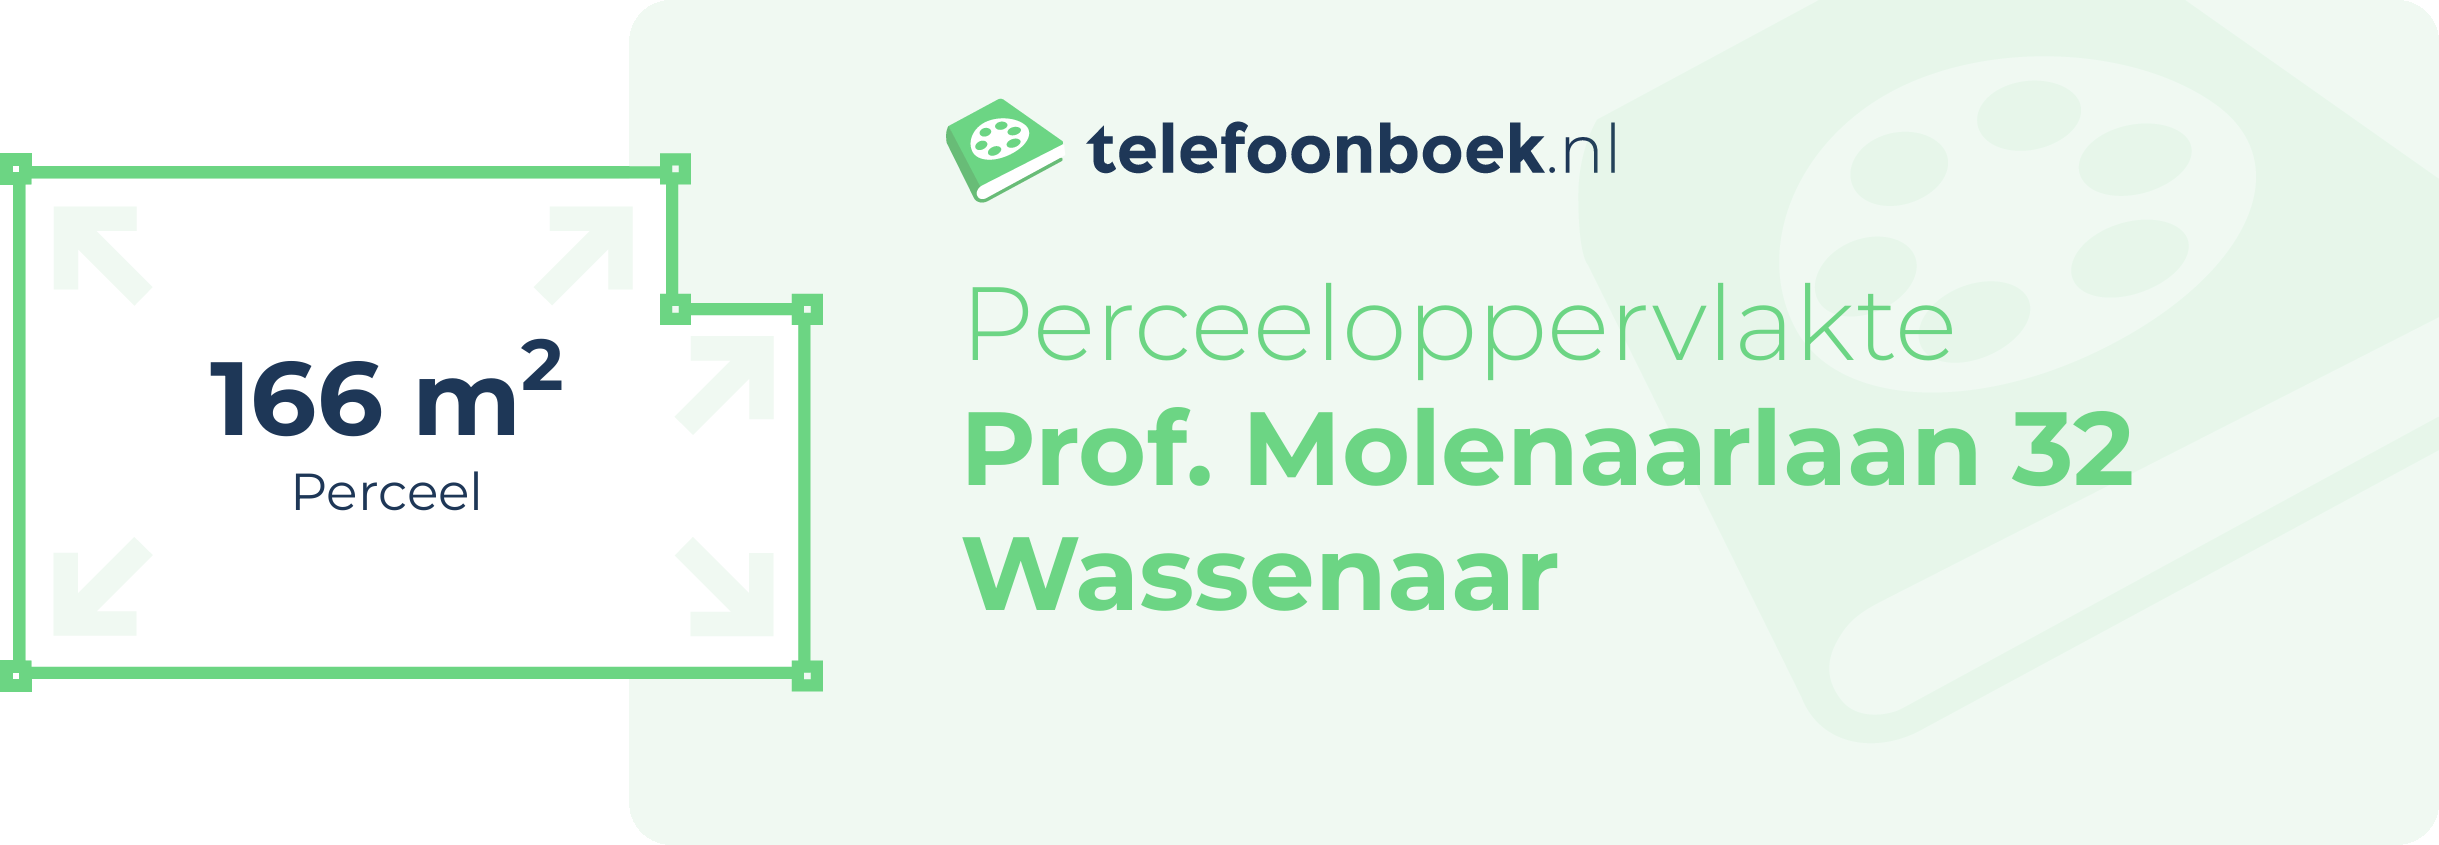 Perceeloppervlakte Prof. Molenaarlaan 32 Wassenaar